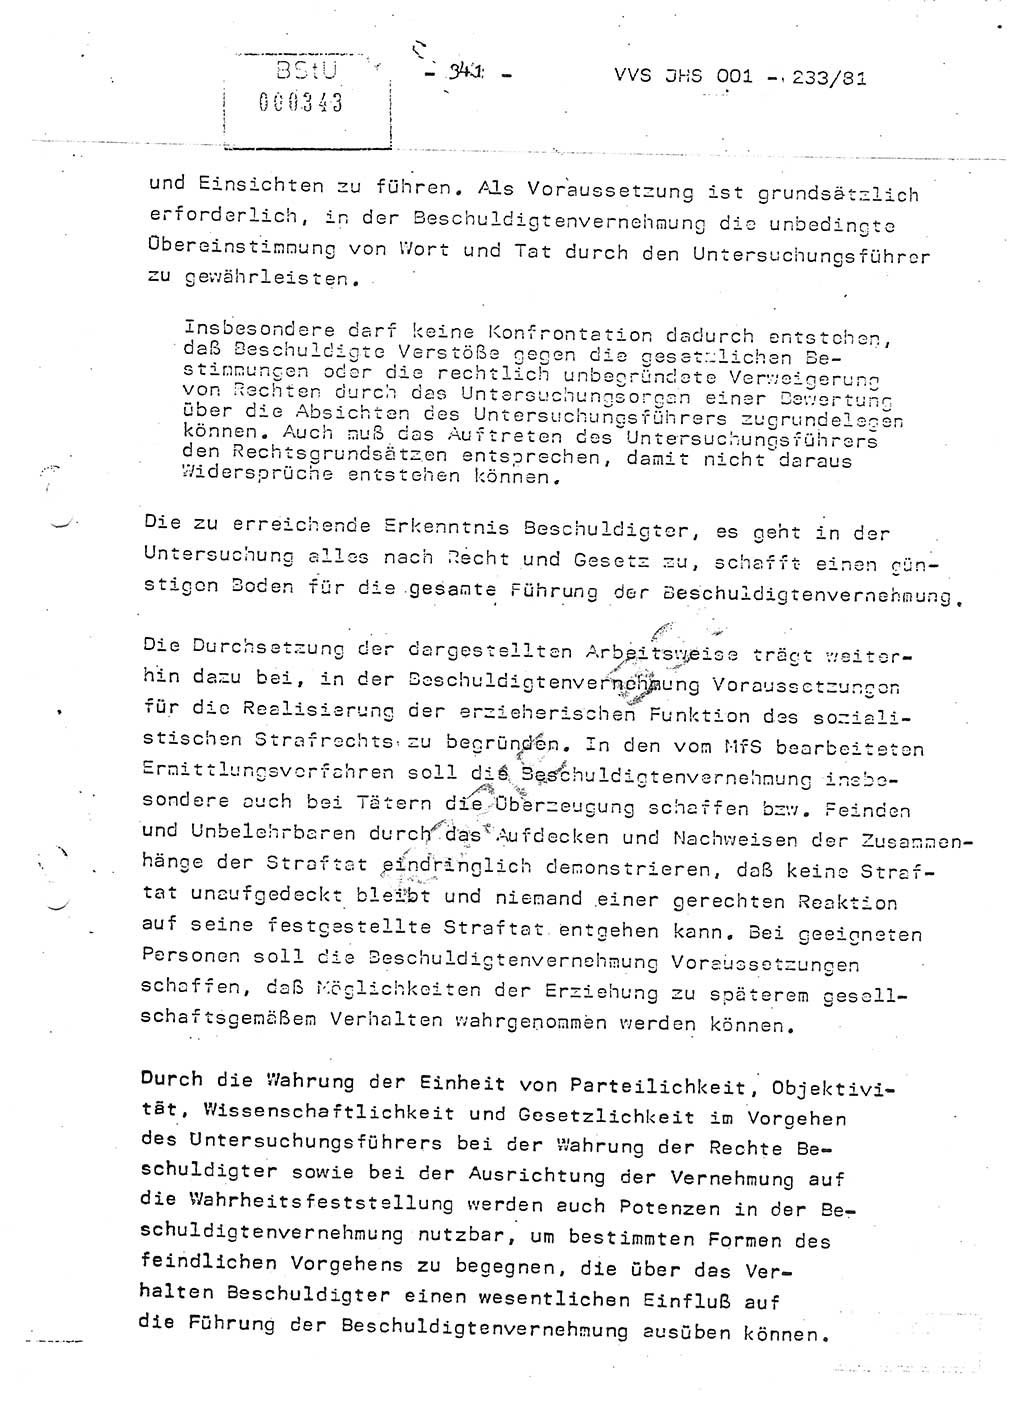 Dissertation Oberstleutnant Horst Zank (JHS), Oberstleutnant Dr. Karl-Heinz Knoblauch (JHS), Oberstleutnant Gustav-Adolf Kowalewski (HA Ⅸ), Oberstleutnant Wolfgang Plötner (HA Ⅸ), Ministerium für Staatssicherheit (MfS) [Deutsche Demokratische Republik (DDR)], Juristische Hochschule (JHS), Vertrauliche Verschlußsache (VVS) o001-233/81, Potsdam 1981, Blatt 341 (Diss. MfS DDR JHS VVS o001-233/81 1981, Bl. 341)